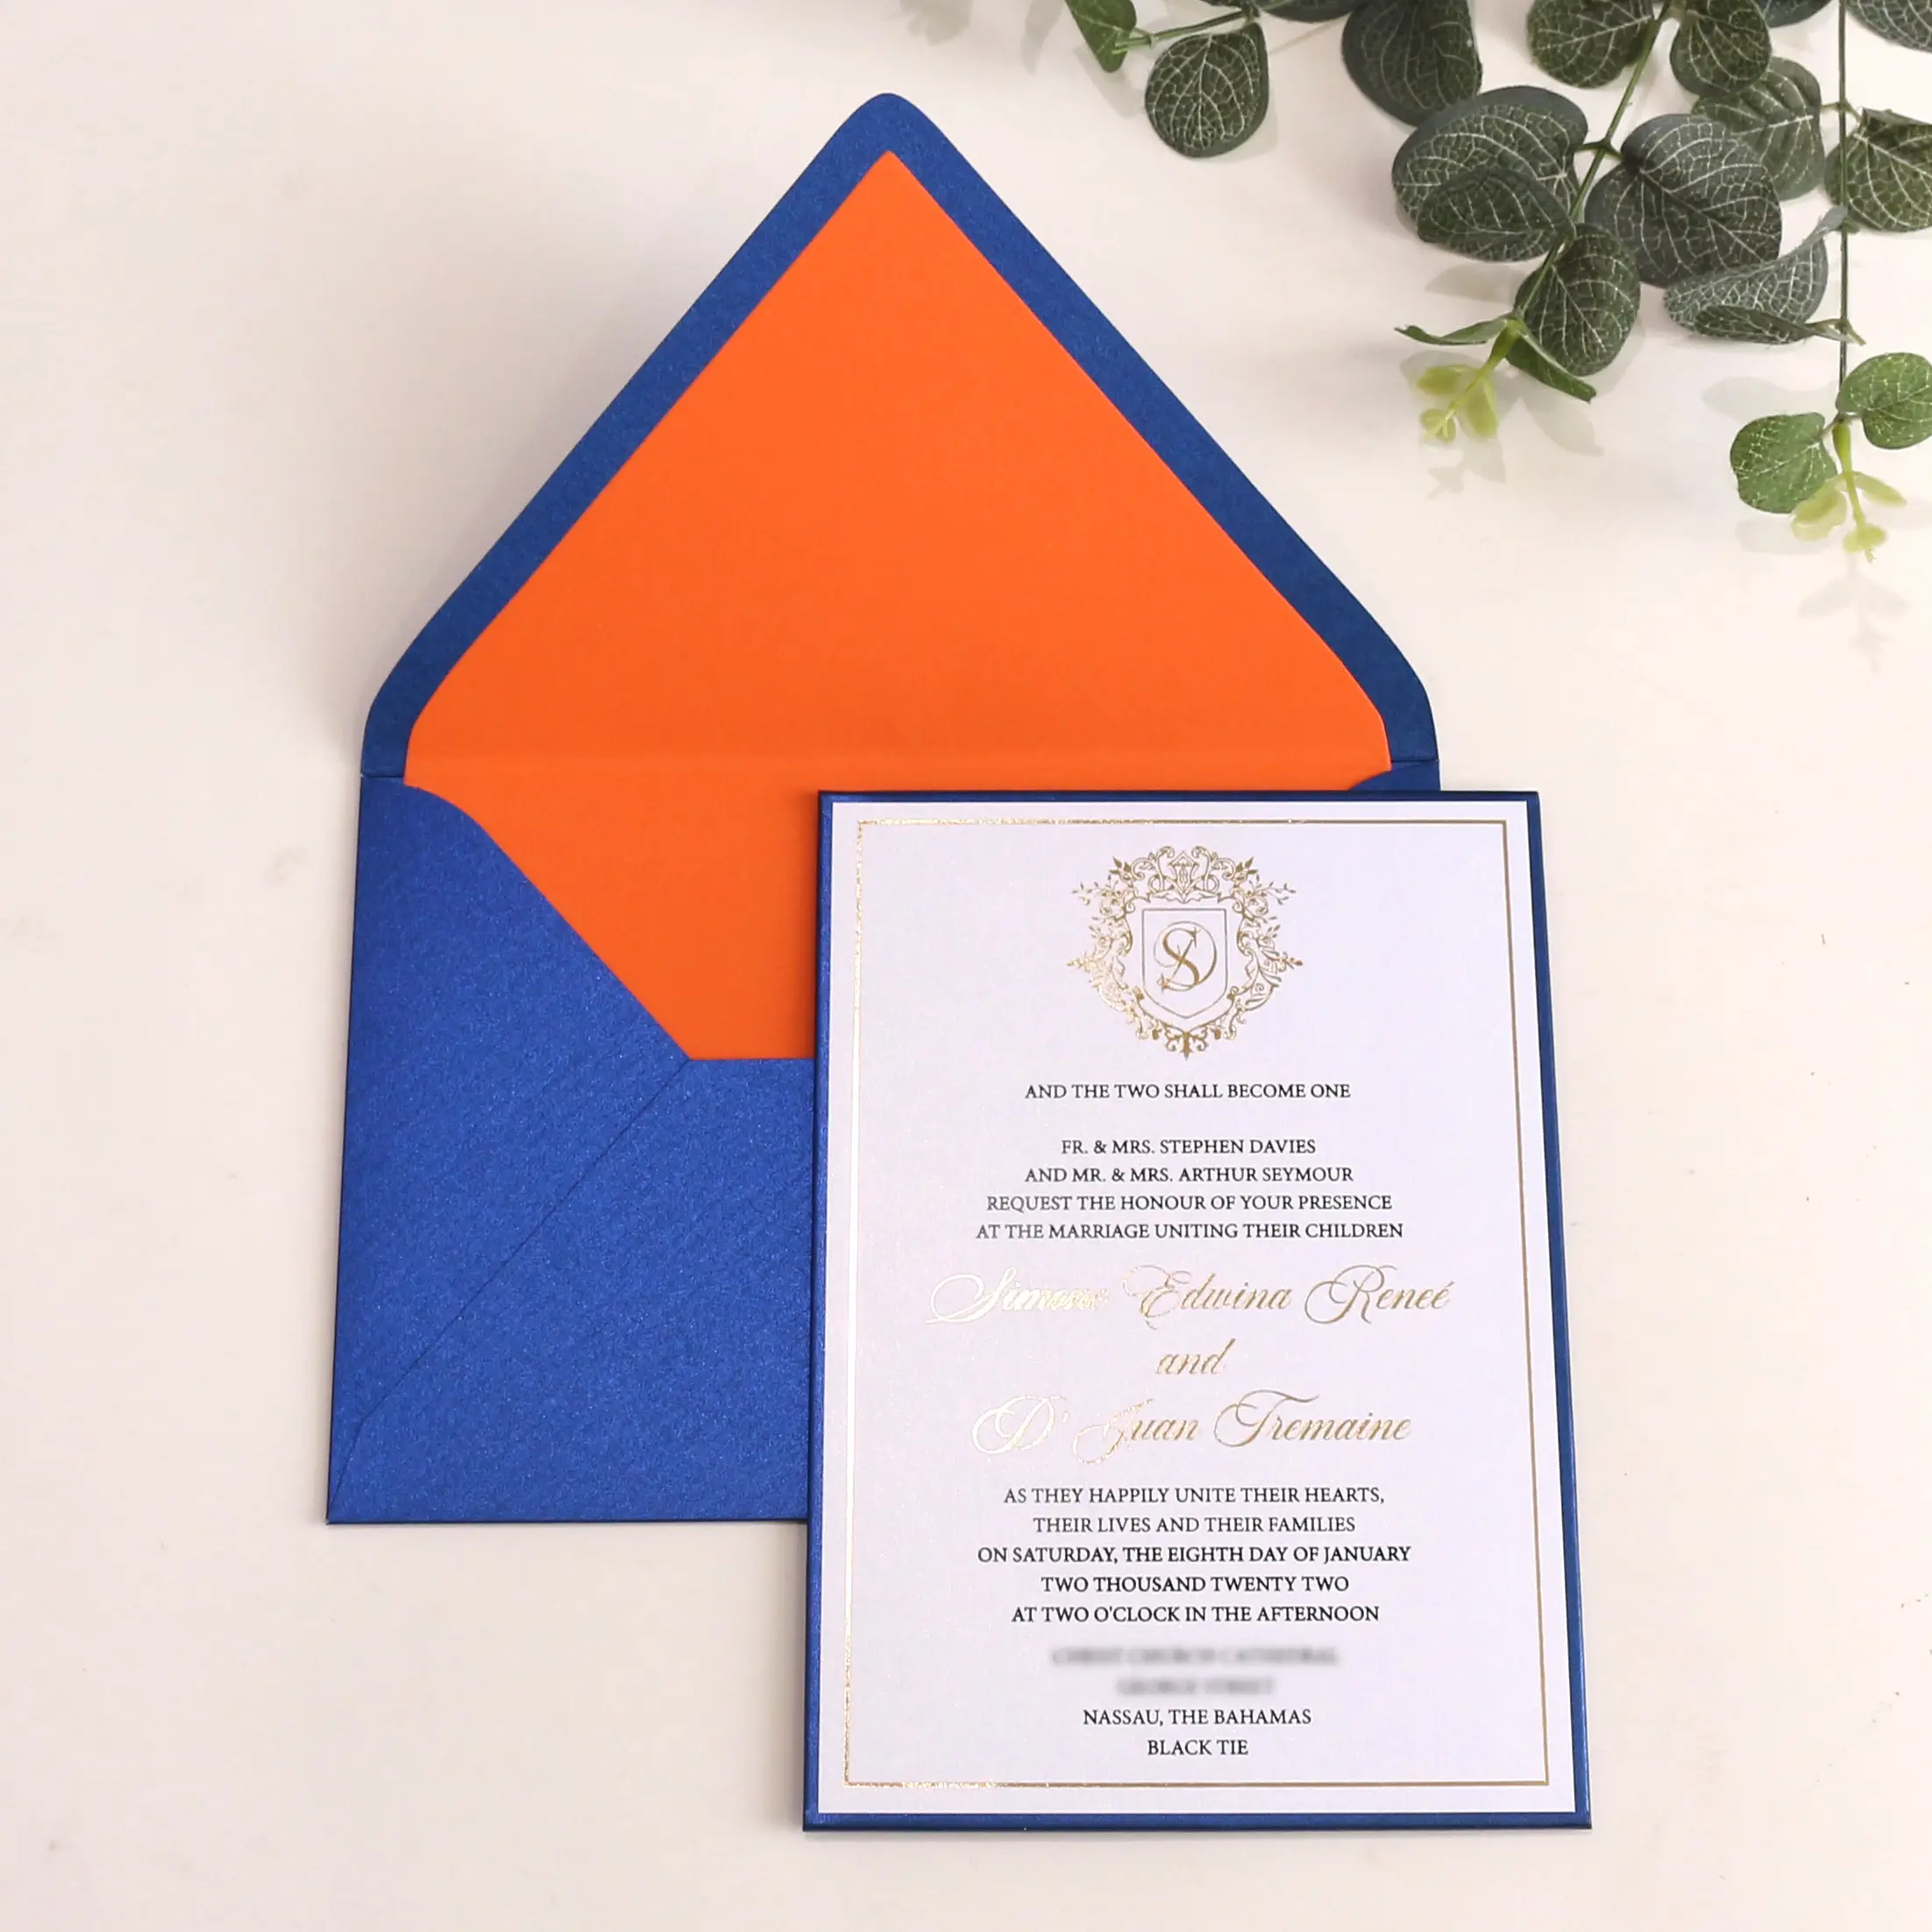 Quinceanera convite real azul convite a5 tamanho único placa rígida convite de casamento com envelope forro laranja